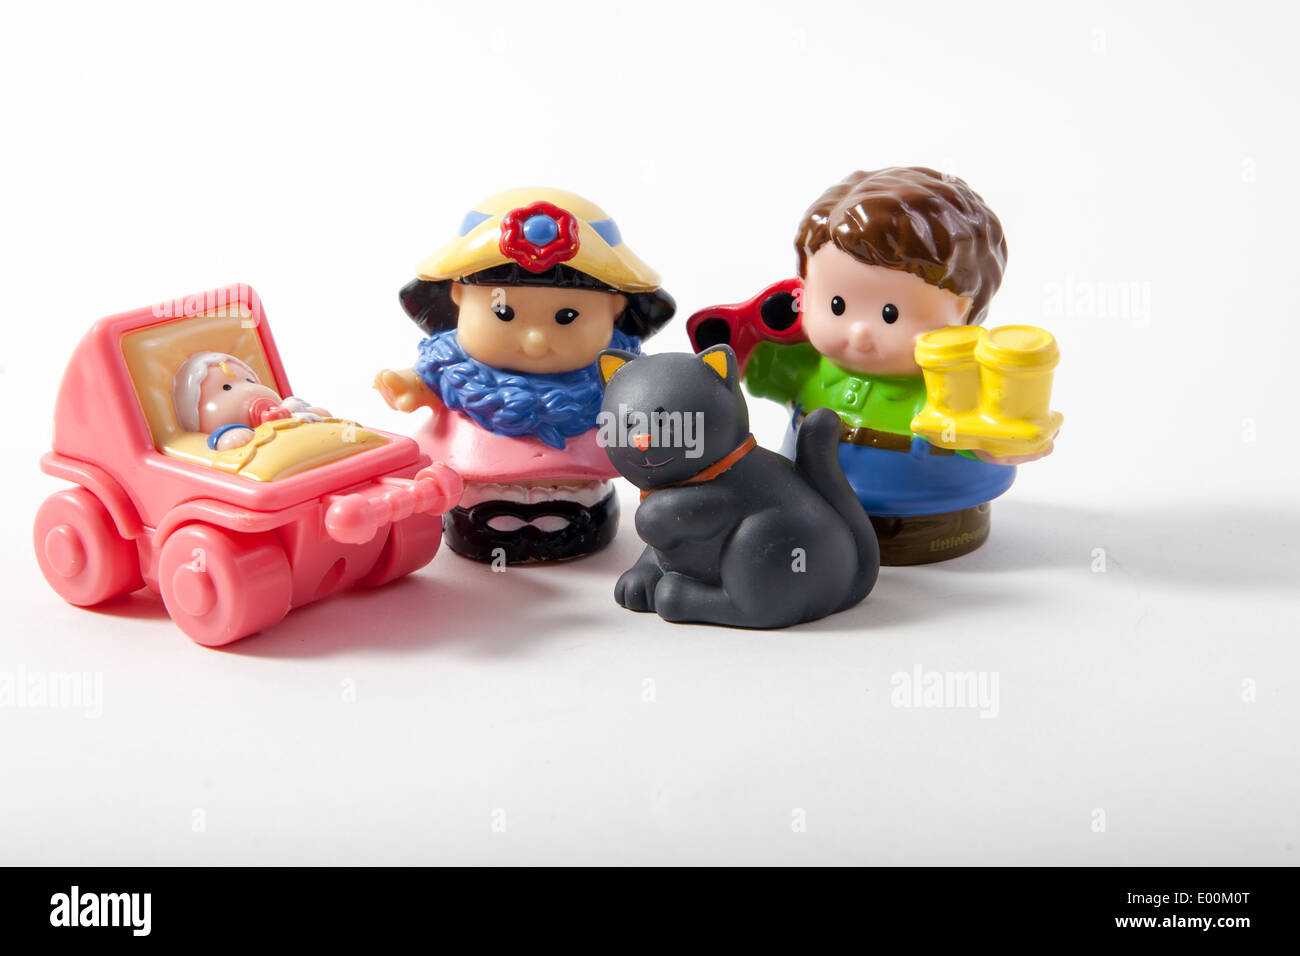 Le Fisher Price Little People marque de jouets avec la famille, y compris la momie, chat, bébé dans le landau rose et garçon Banque D'Images